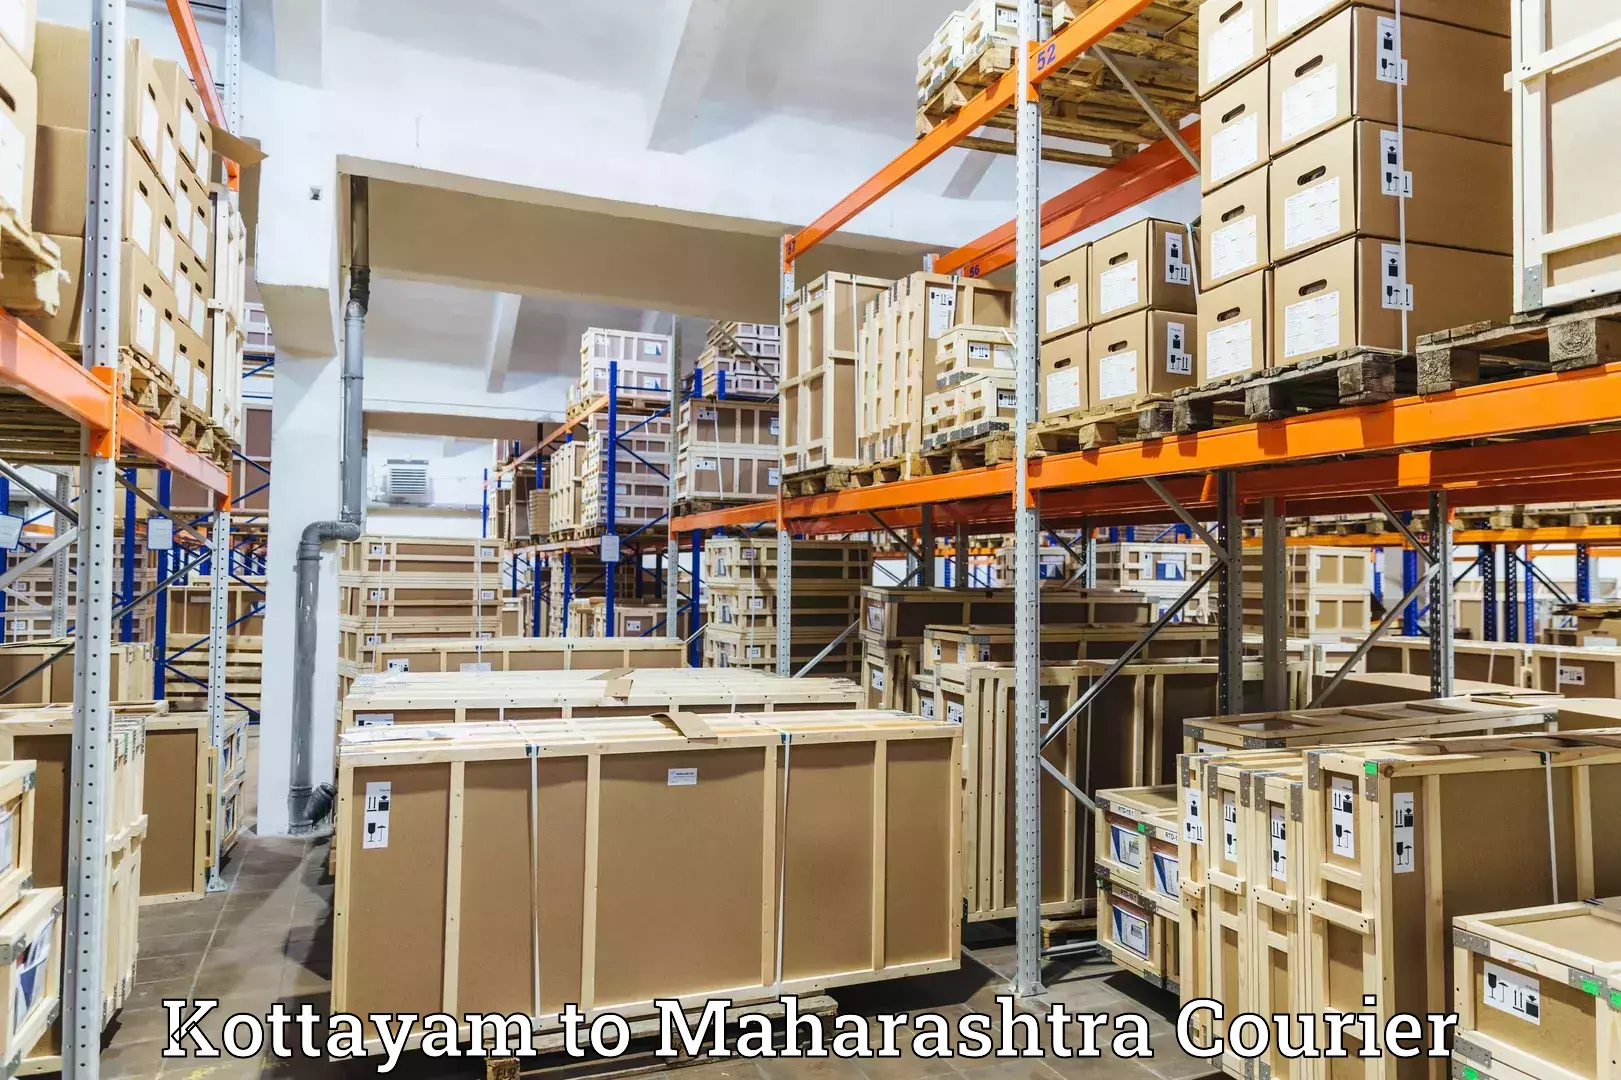 Courier service efficiency Kottayam to Maharashtra